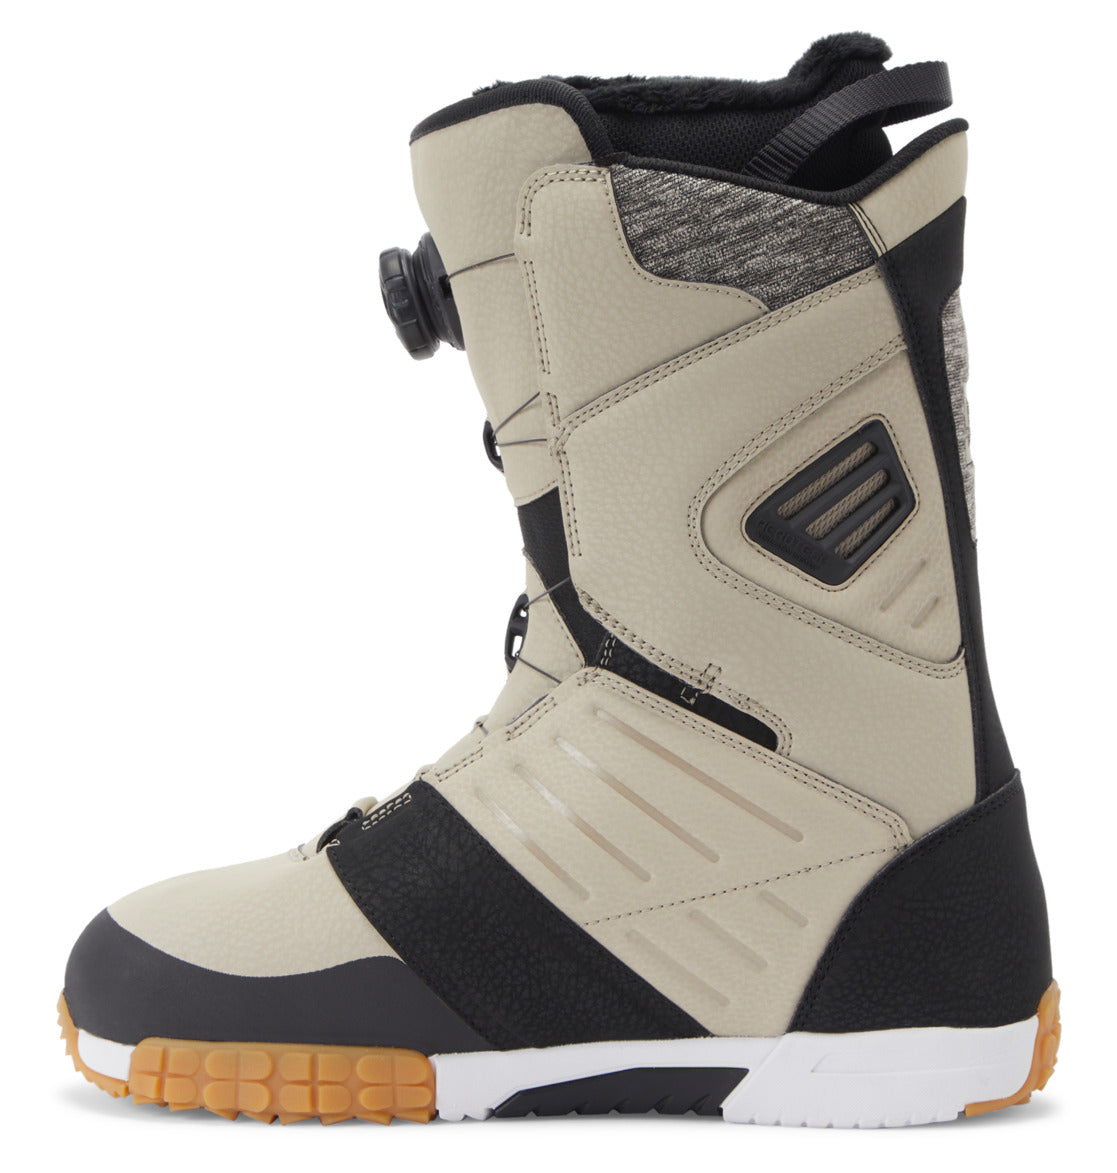 Men's Judge BOA® Snowboard Boots